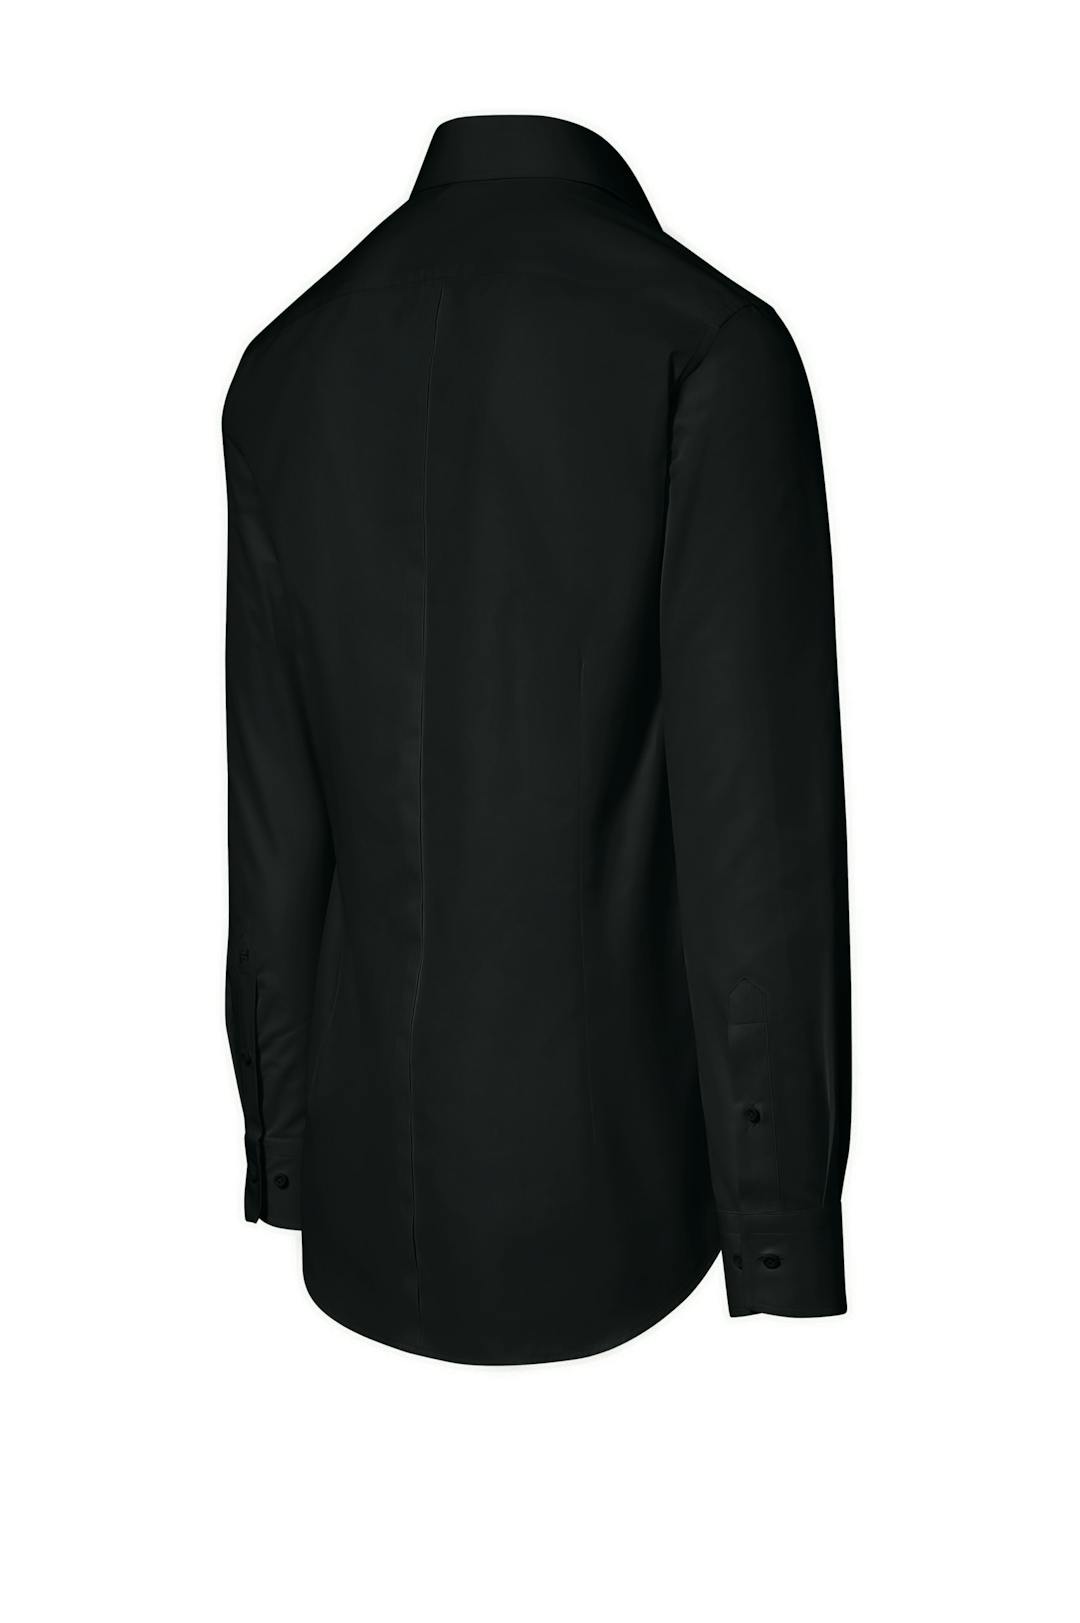 Porsche Design_SS19 Business Shirt Slimfit BAC jet black_145,00€